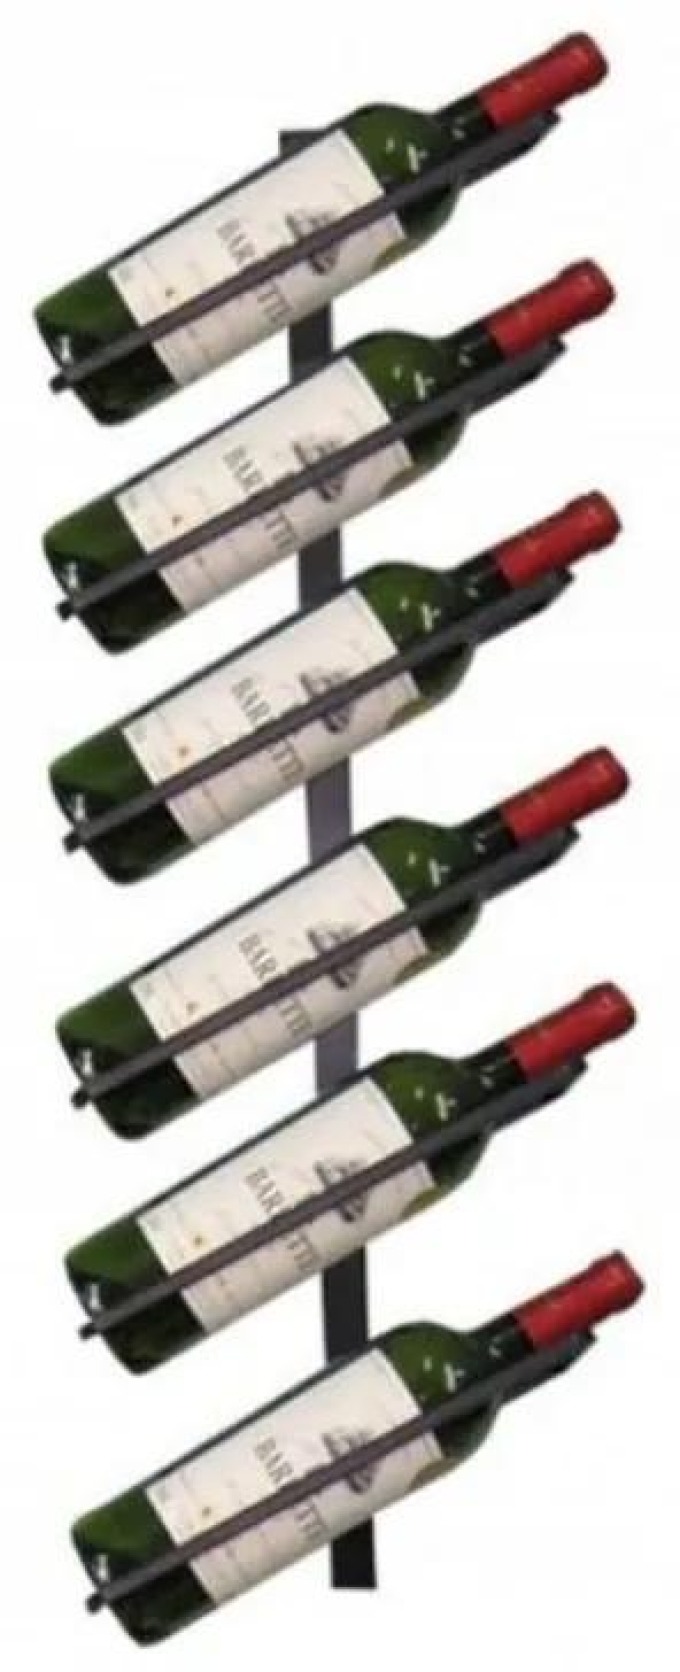 Elegantní stojan na víno ve skandinávském stylu pro šest lahví - zajímavý dekorační prvek s precizním zpracováním a moderním designem